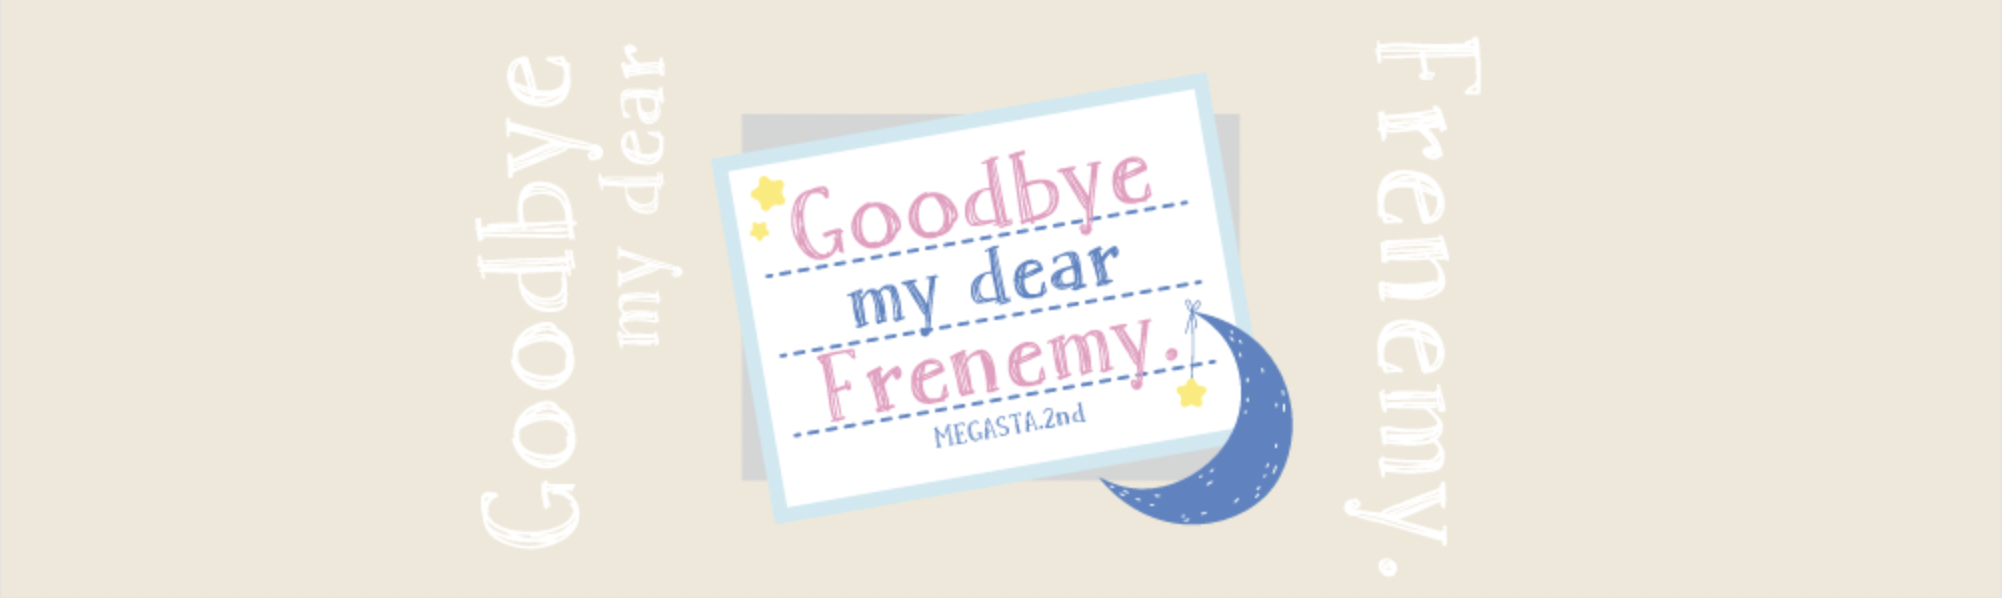 2.5次元ダンスライブ「ツキウタ。」ステージ Girl’s Side MEGASTA. Episode2】「Goodbye my dear Frenemy.」